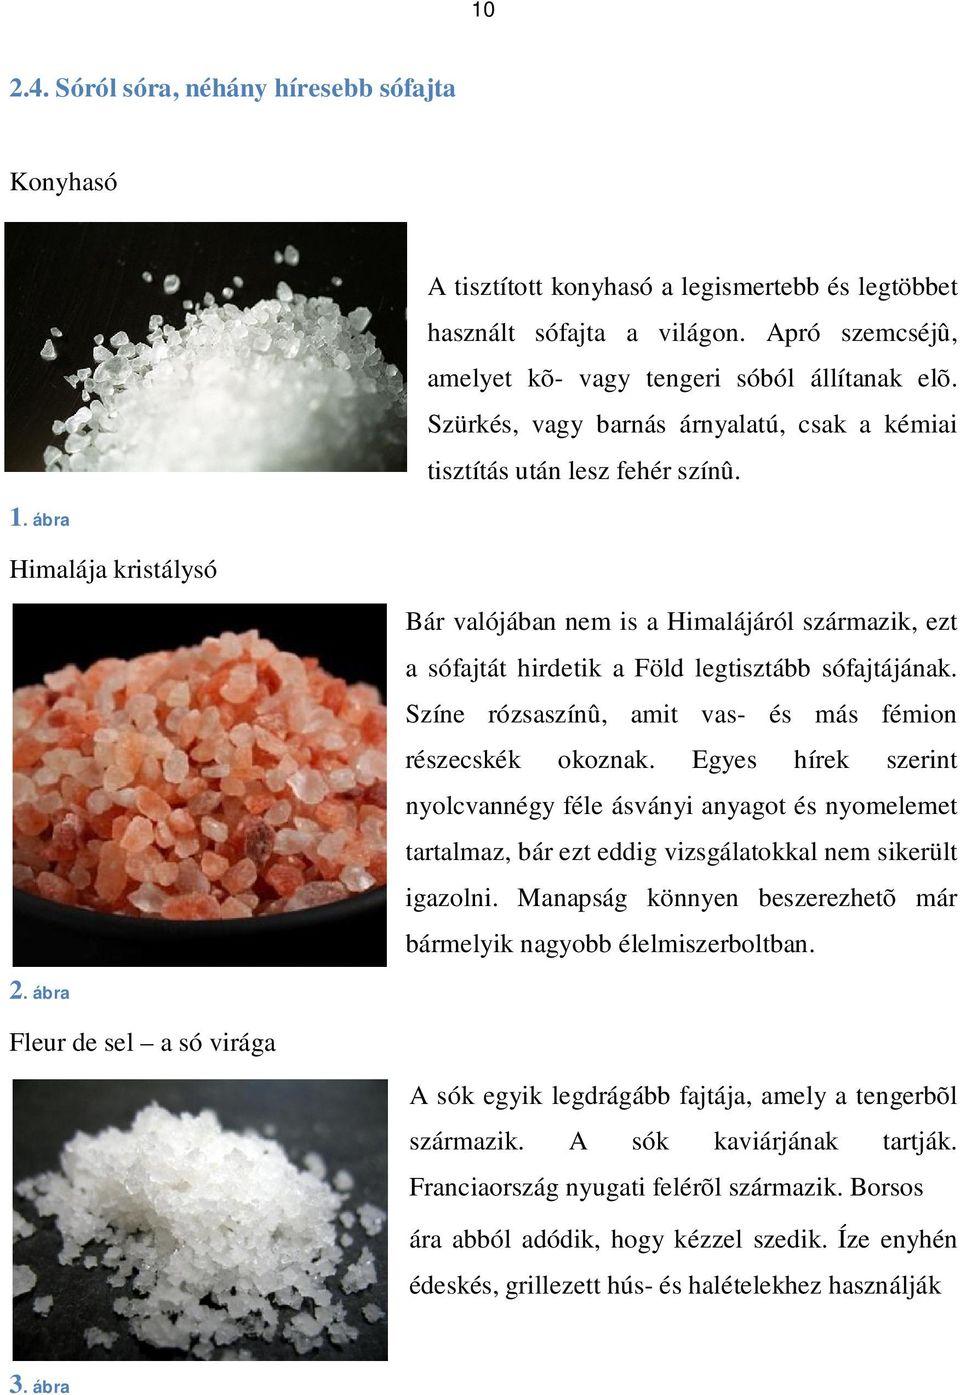 Bár valójában nem is a Himalájáról származik, ezt a sófajtát hirdetik a Föld legtisztább sófajtájának. Színe rózsaszínû, amit vas- és más fémion részecskék okoznak.